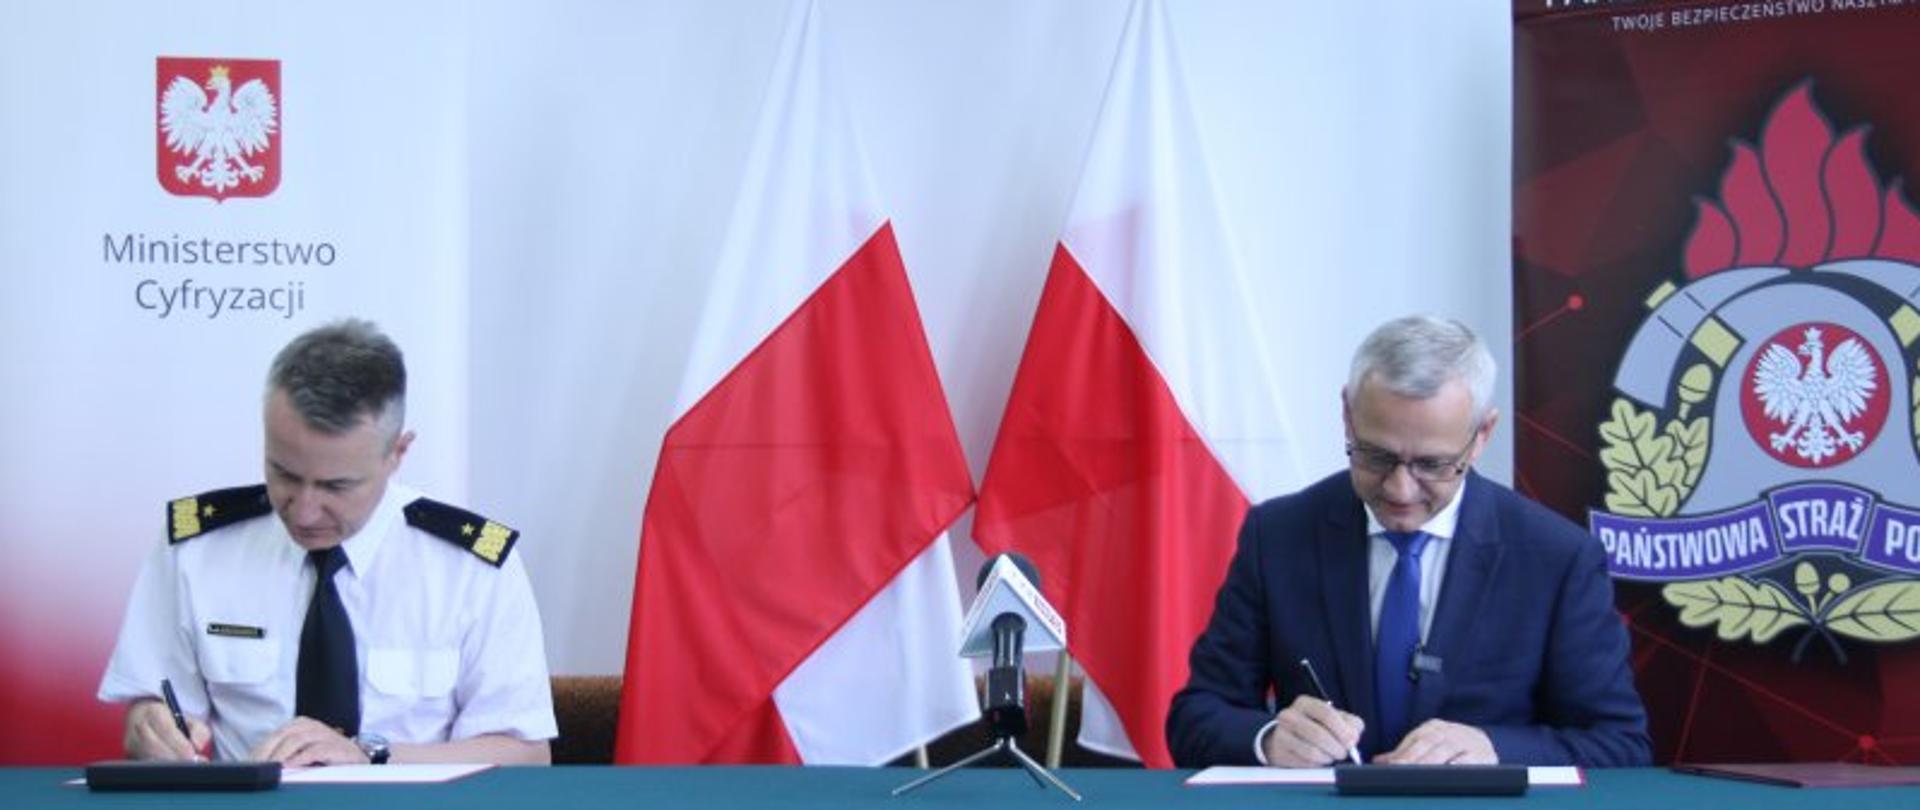 Podpisanie porozumienia pomiędzy Komendantem Głównym Państwowej Straży Pożarnej a Ministerstwem Cyfryzacji – na zdjęciu moment podpisywania Porozumienia na tle biało-czerwonych flag. Z boku widoczne logotypy MC i PSP